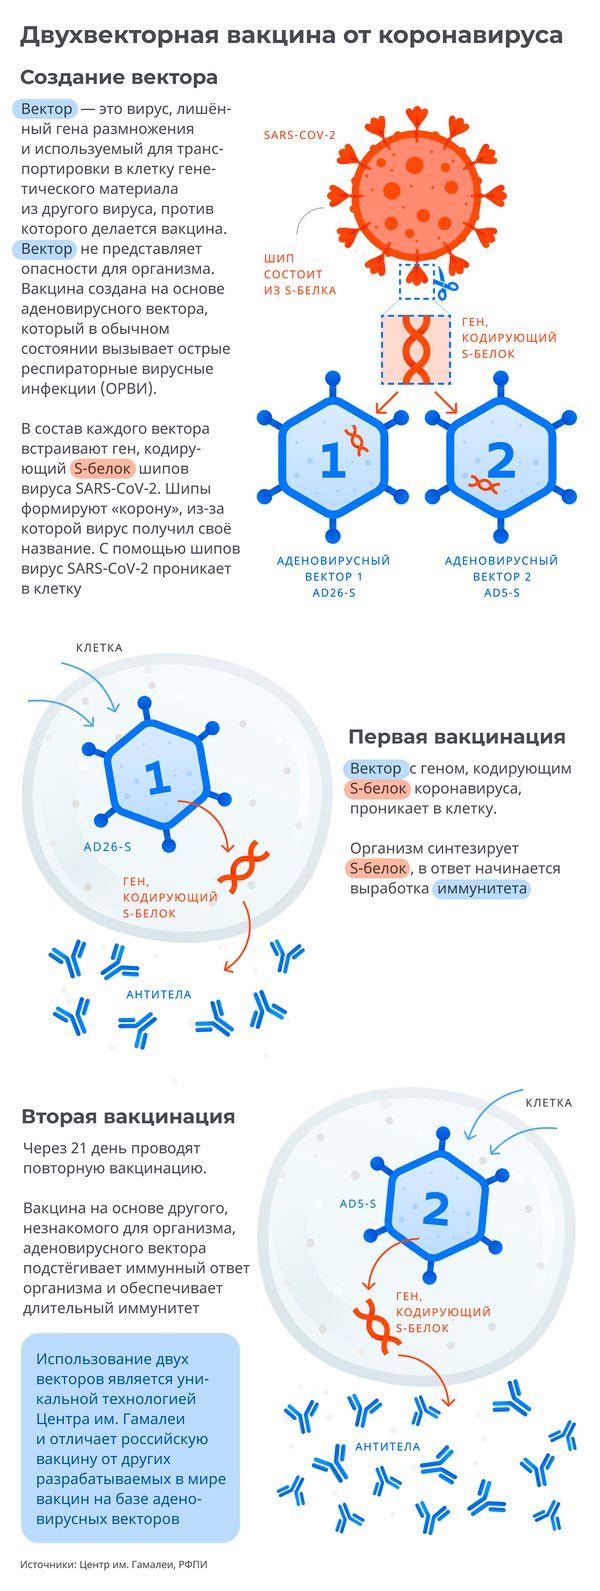 Спутник V: российская вакцина от COVID-19 - Sputnik Беларусь